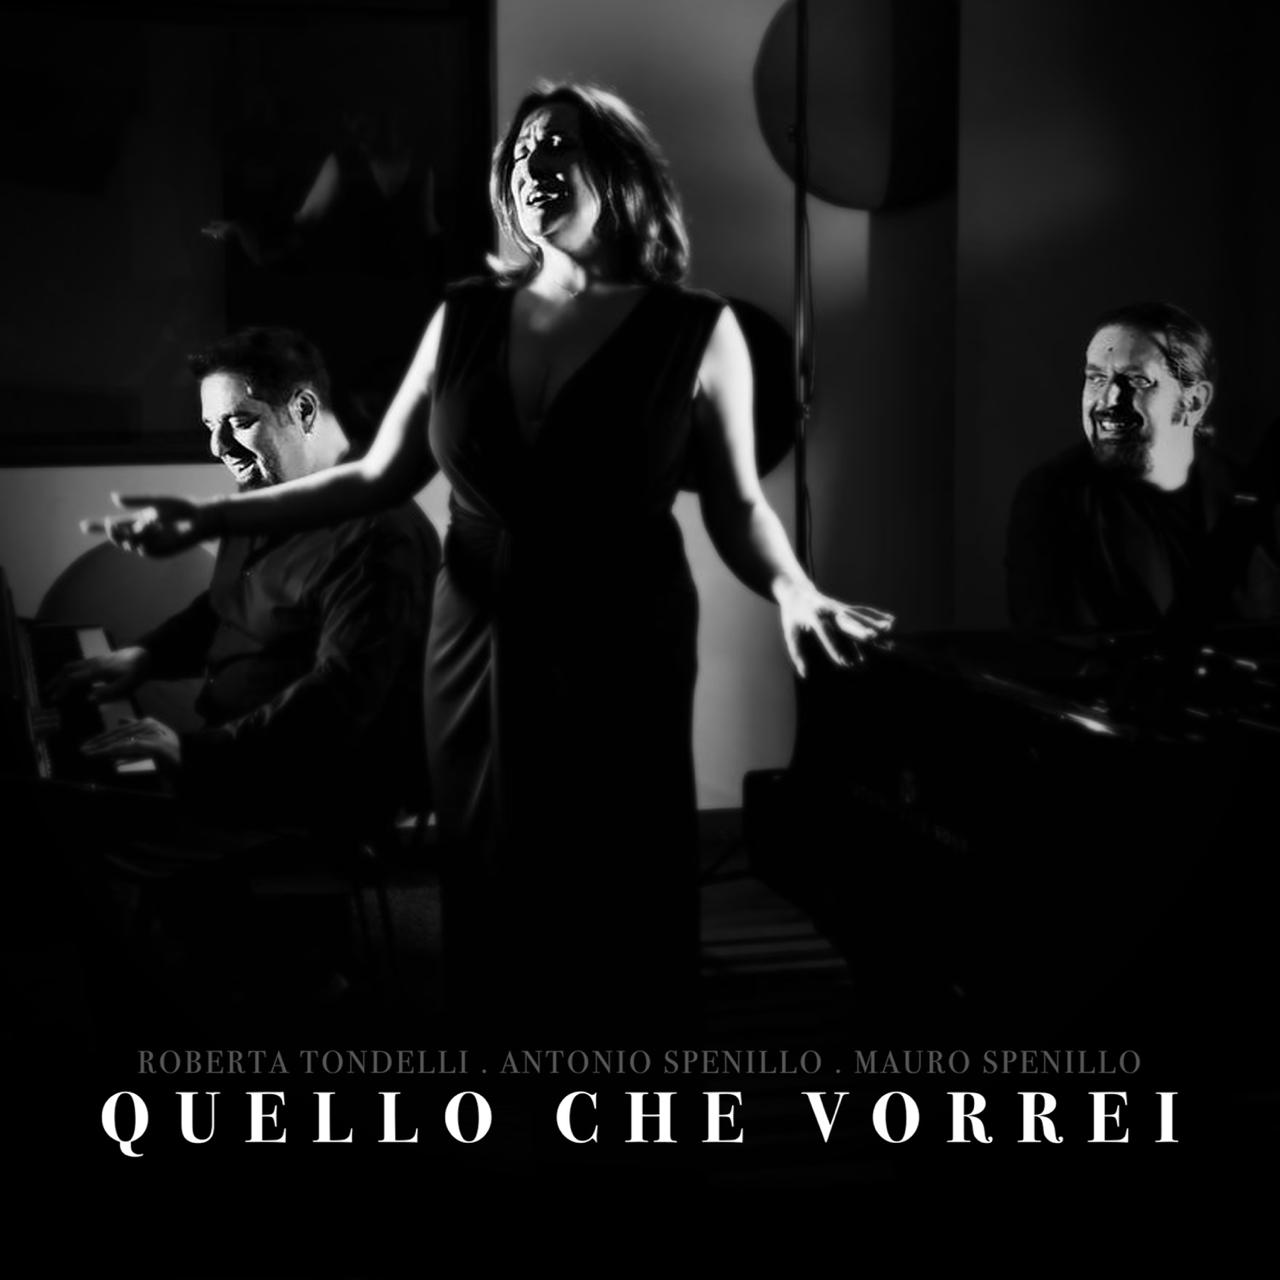 Scopri di più sull'articolo “Quello che vorrei” è il nuovo singolo di Roberta Tondelli, Antonio Spenillo e Mauro Spenillo